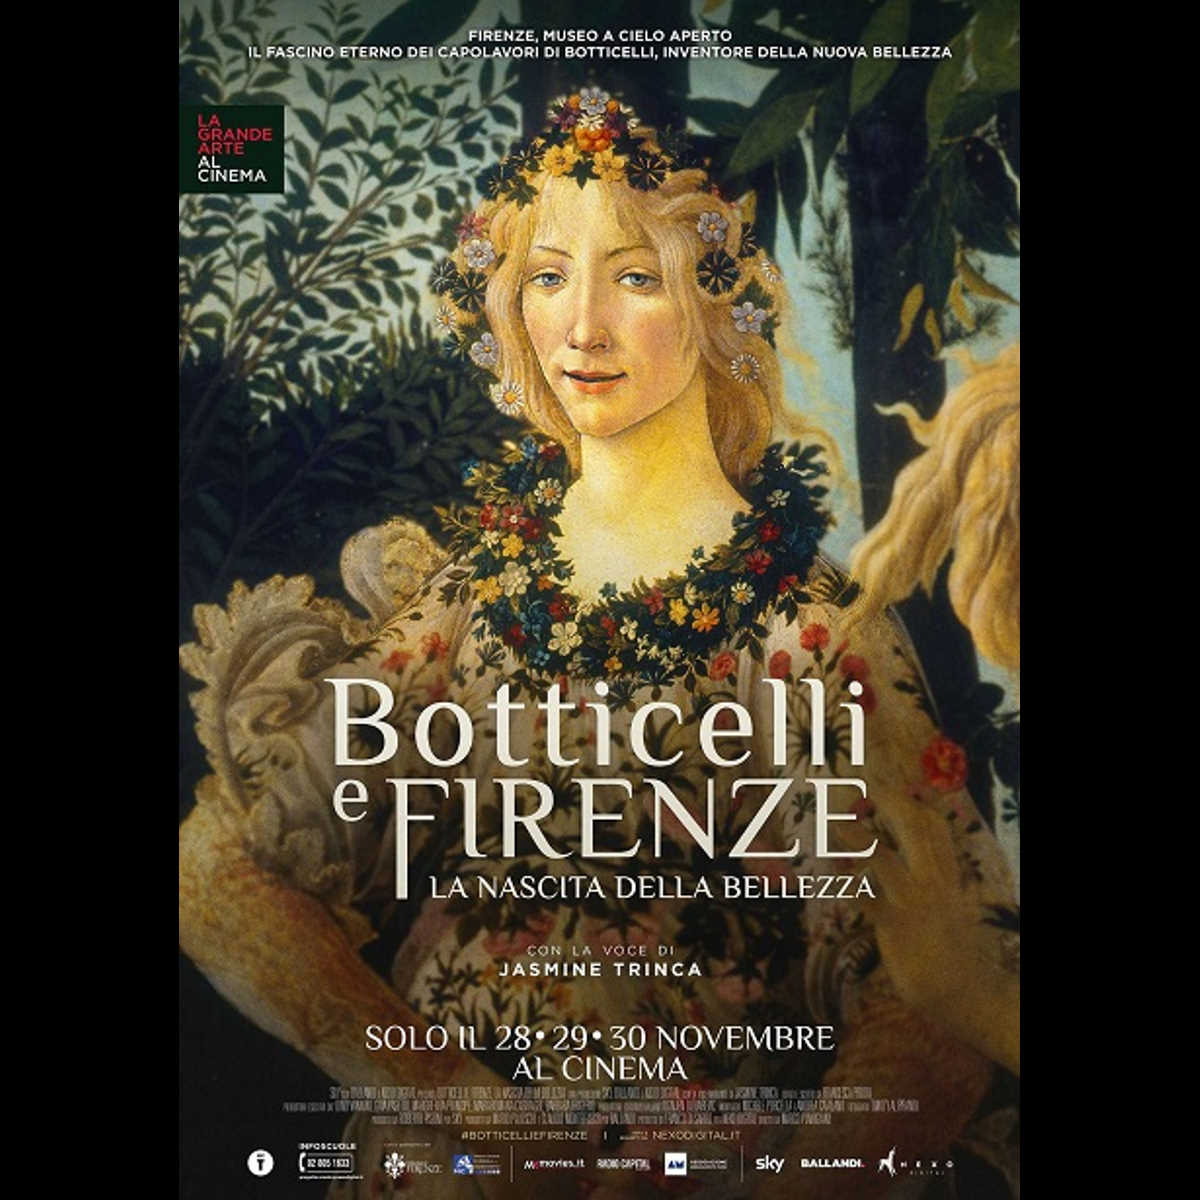 Grande Cinema con Botticelli e Firenze ultime repliche